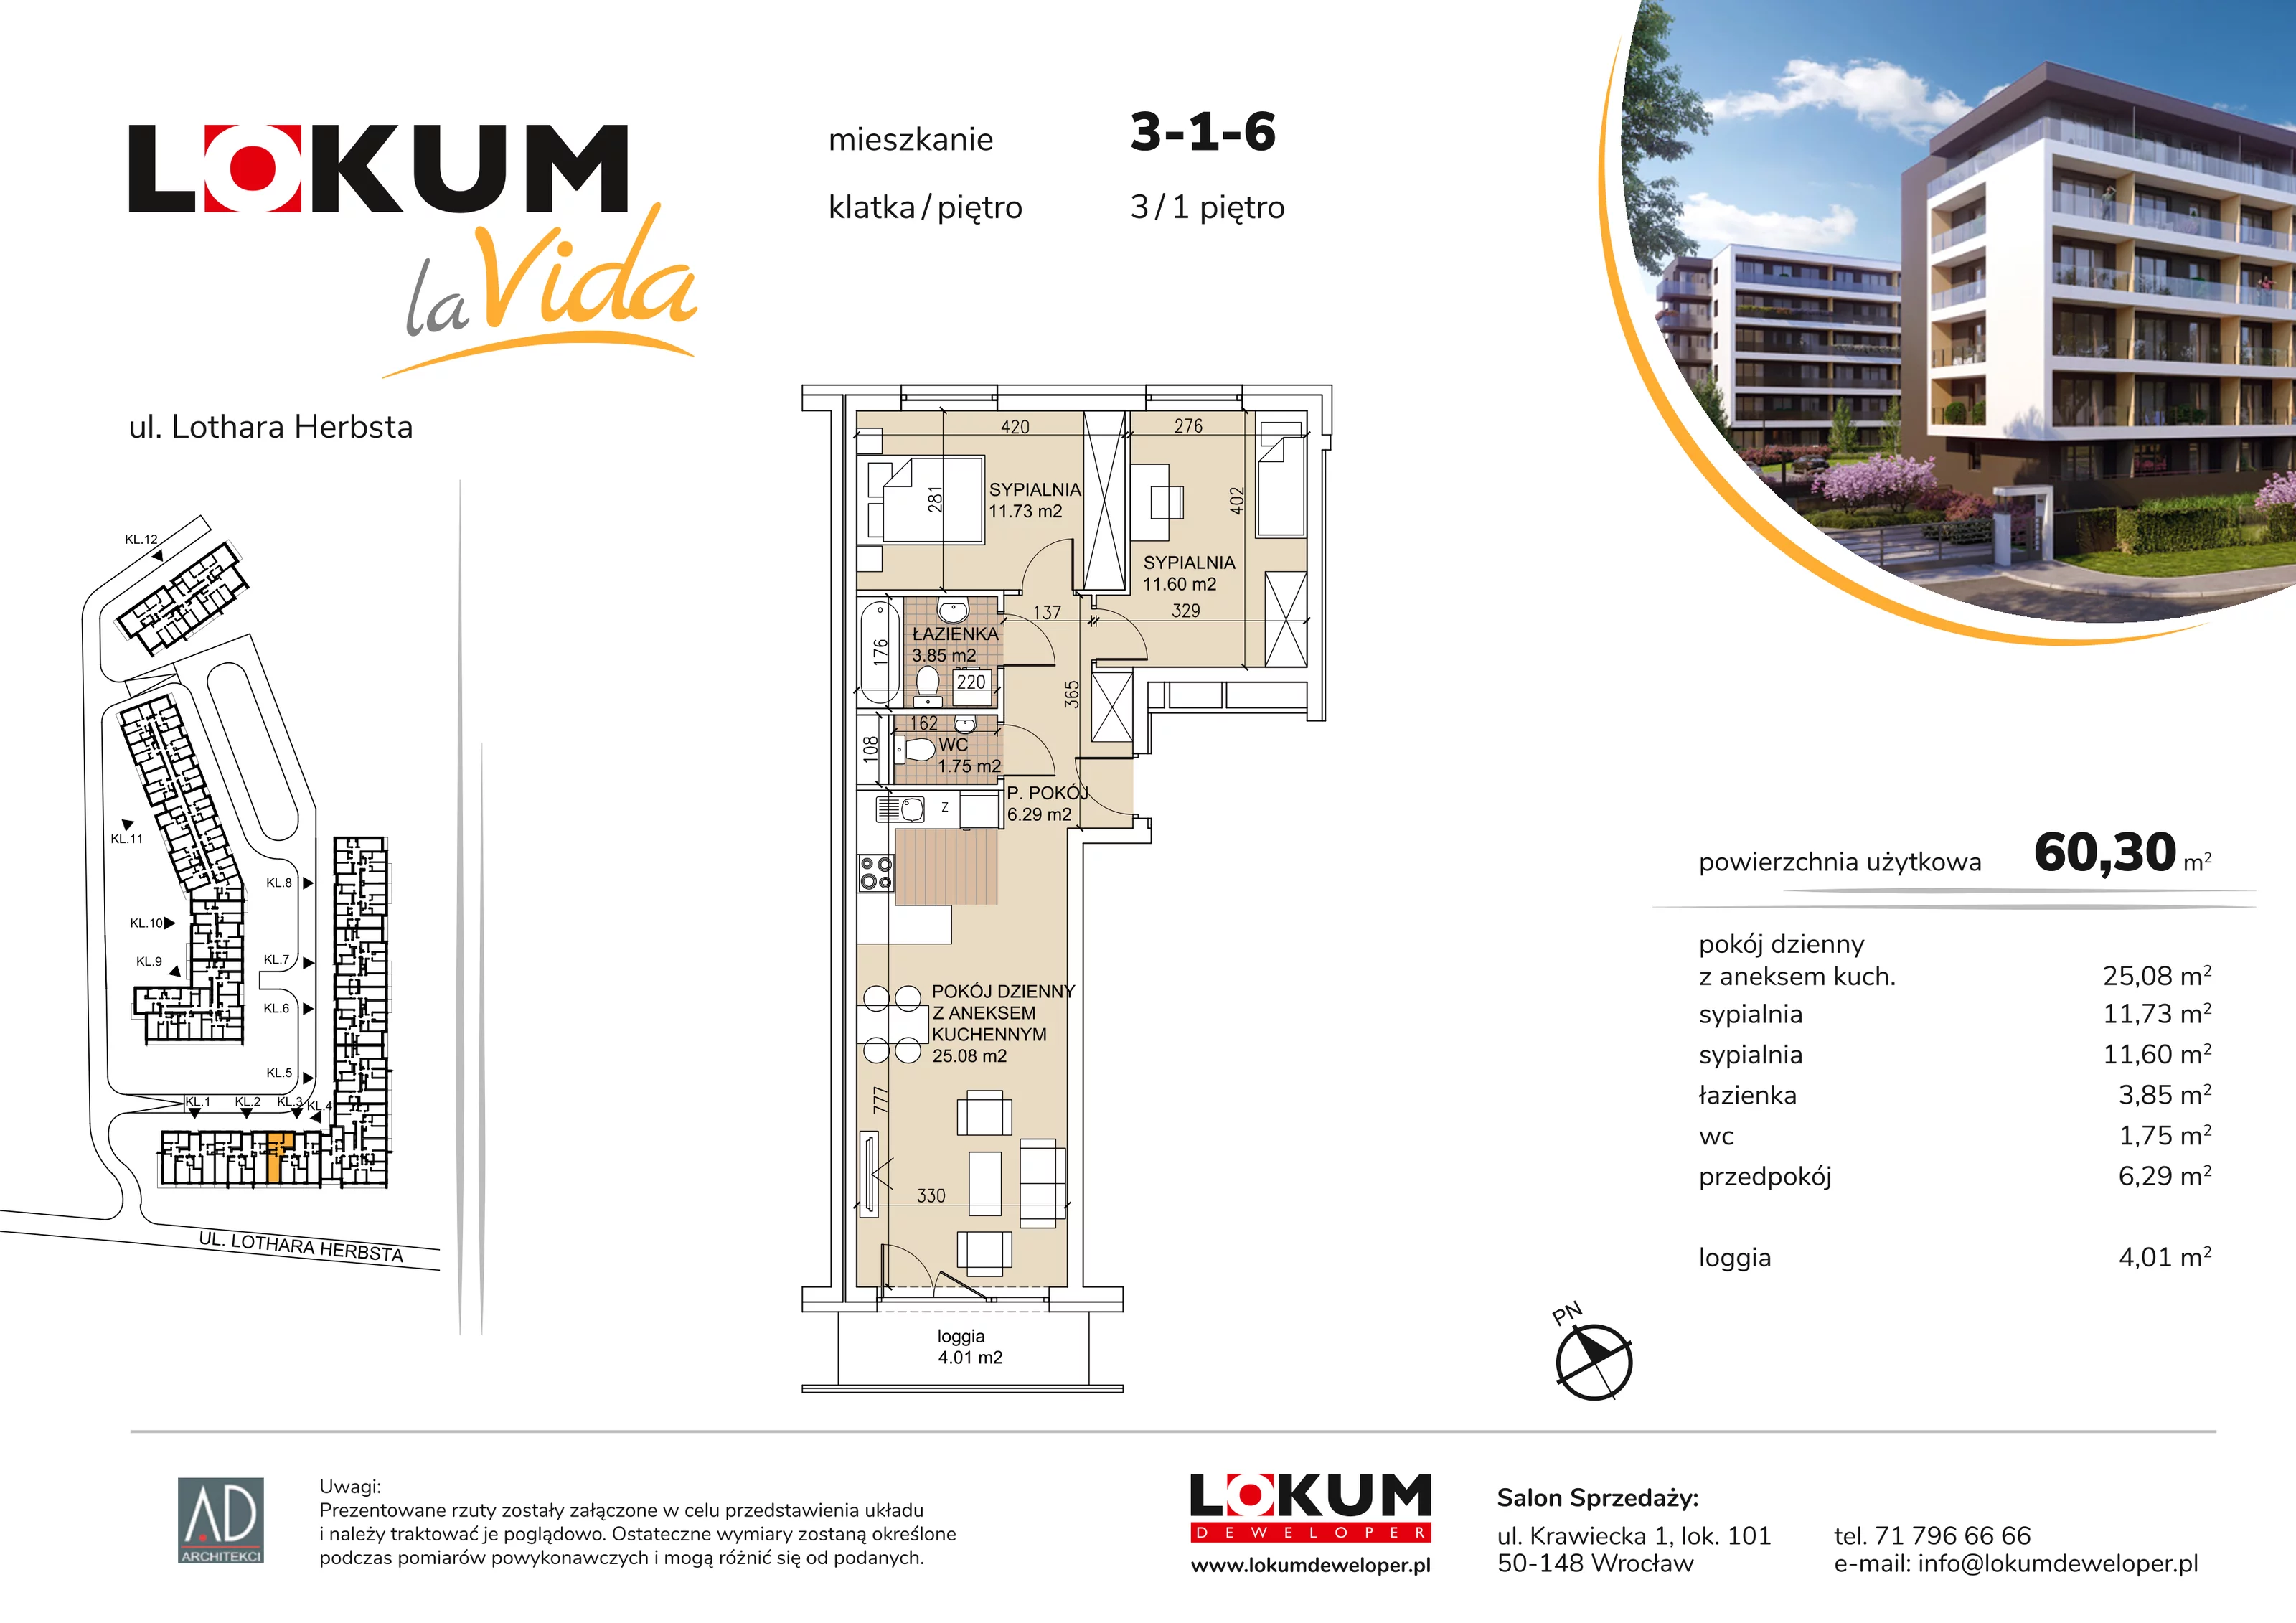 Mieszkanie 60,30 m², piętro 1, oferta nr 3-1-6, Lokum la Vida, Wrocław, Sołtysowice, ul. Lothara Herbsta